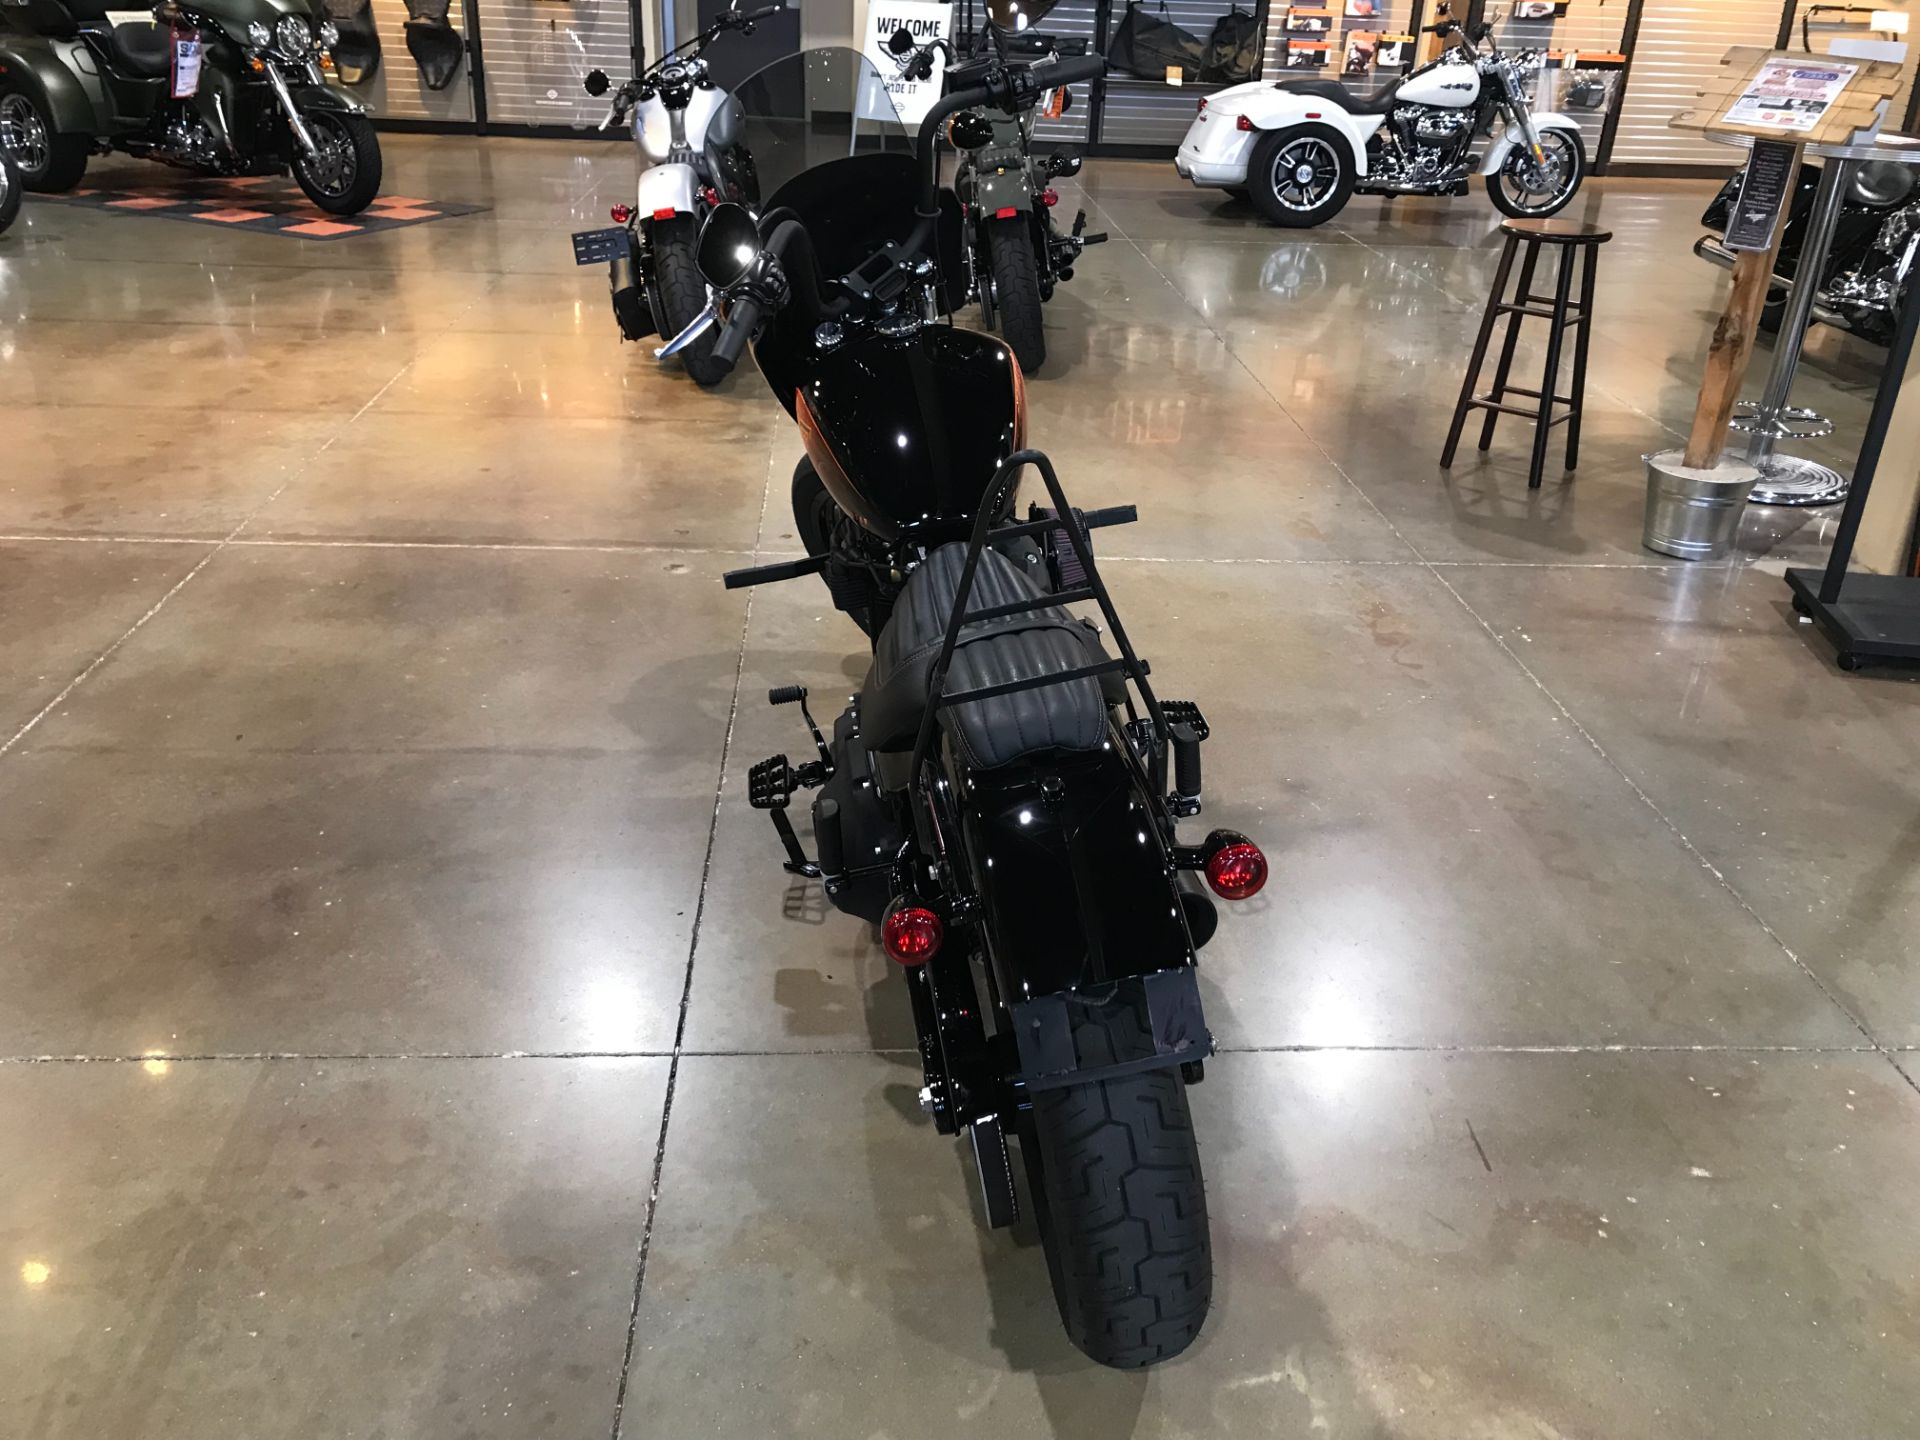 2021 Harley-Davidson Street Bob® 114 in Kingwood, Texas - Photo 3